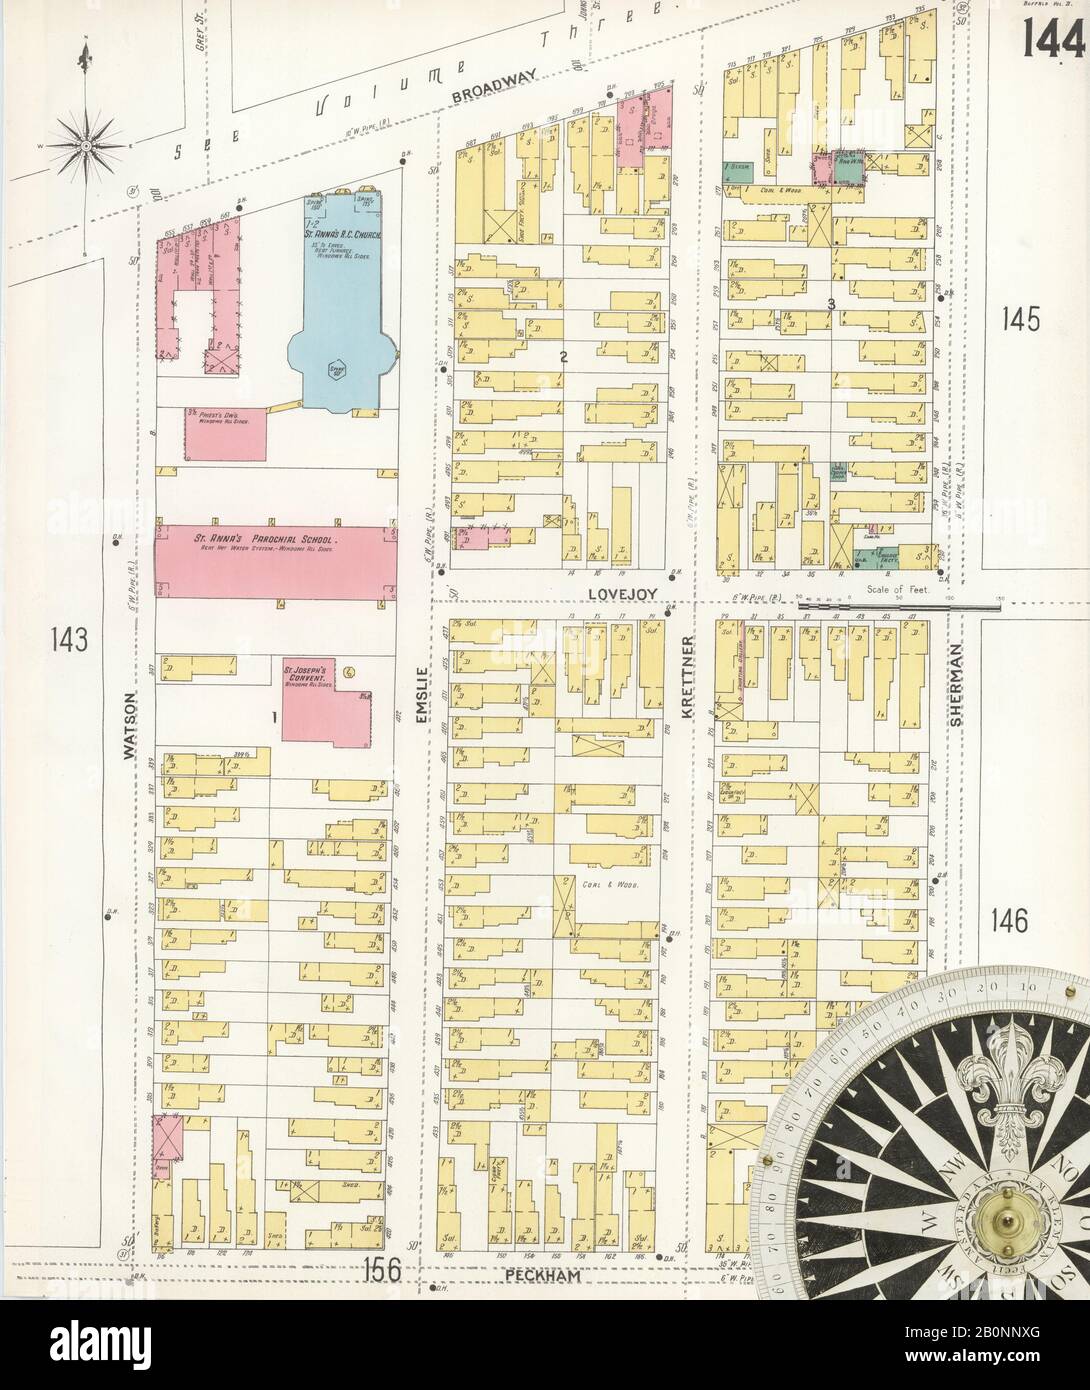 Bild 39 von Sanborn Fire Insurance Map aus Buffalo, Erie County, New York. 1899 - 1900 Vol. 2, 1899. 109 Blatt(e). Schlüsselzuordnung zu Edition. Bound, Amerika, Straßenkarte mit einem Kompass Aus Dem 19. Jahrhundert Stockfoto